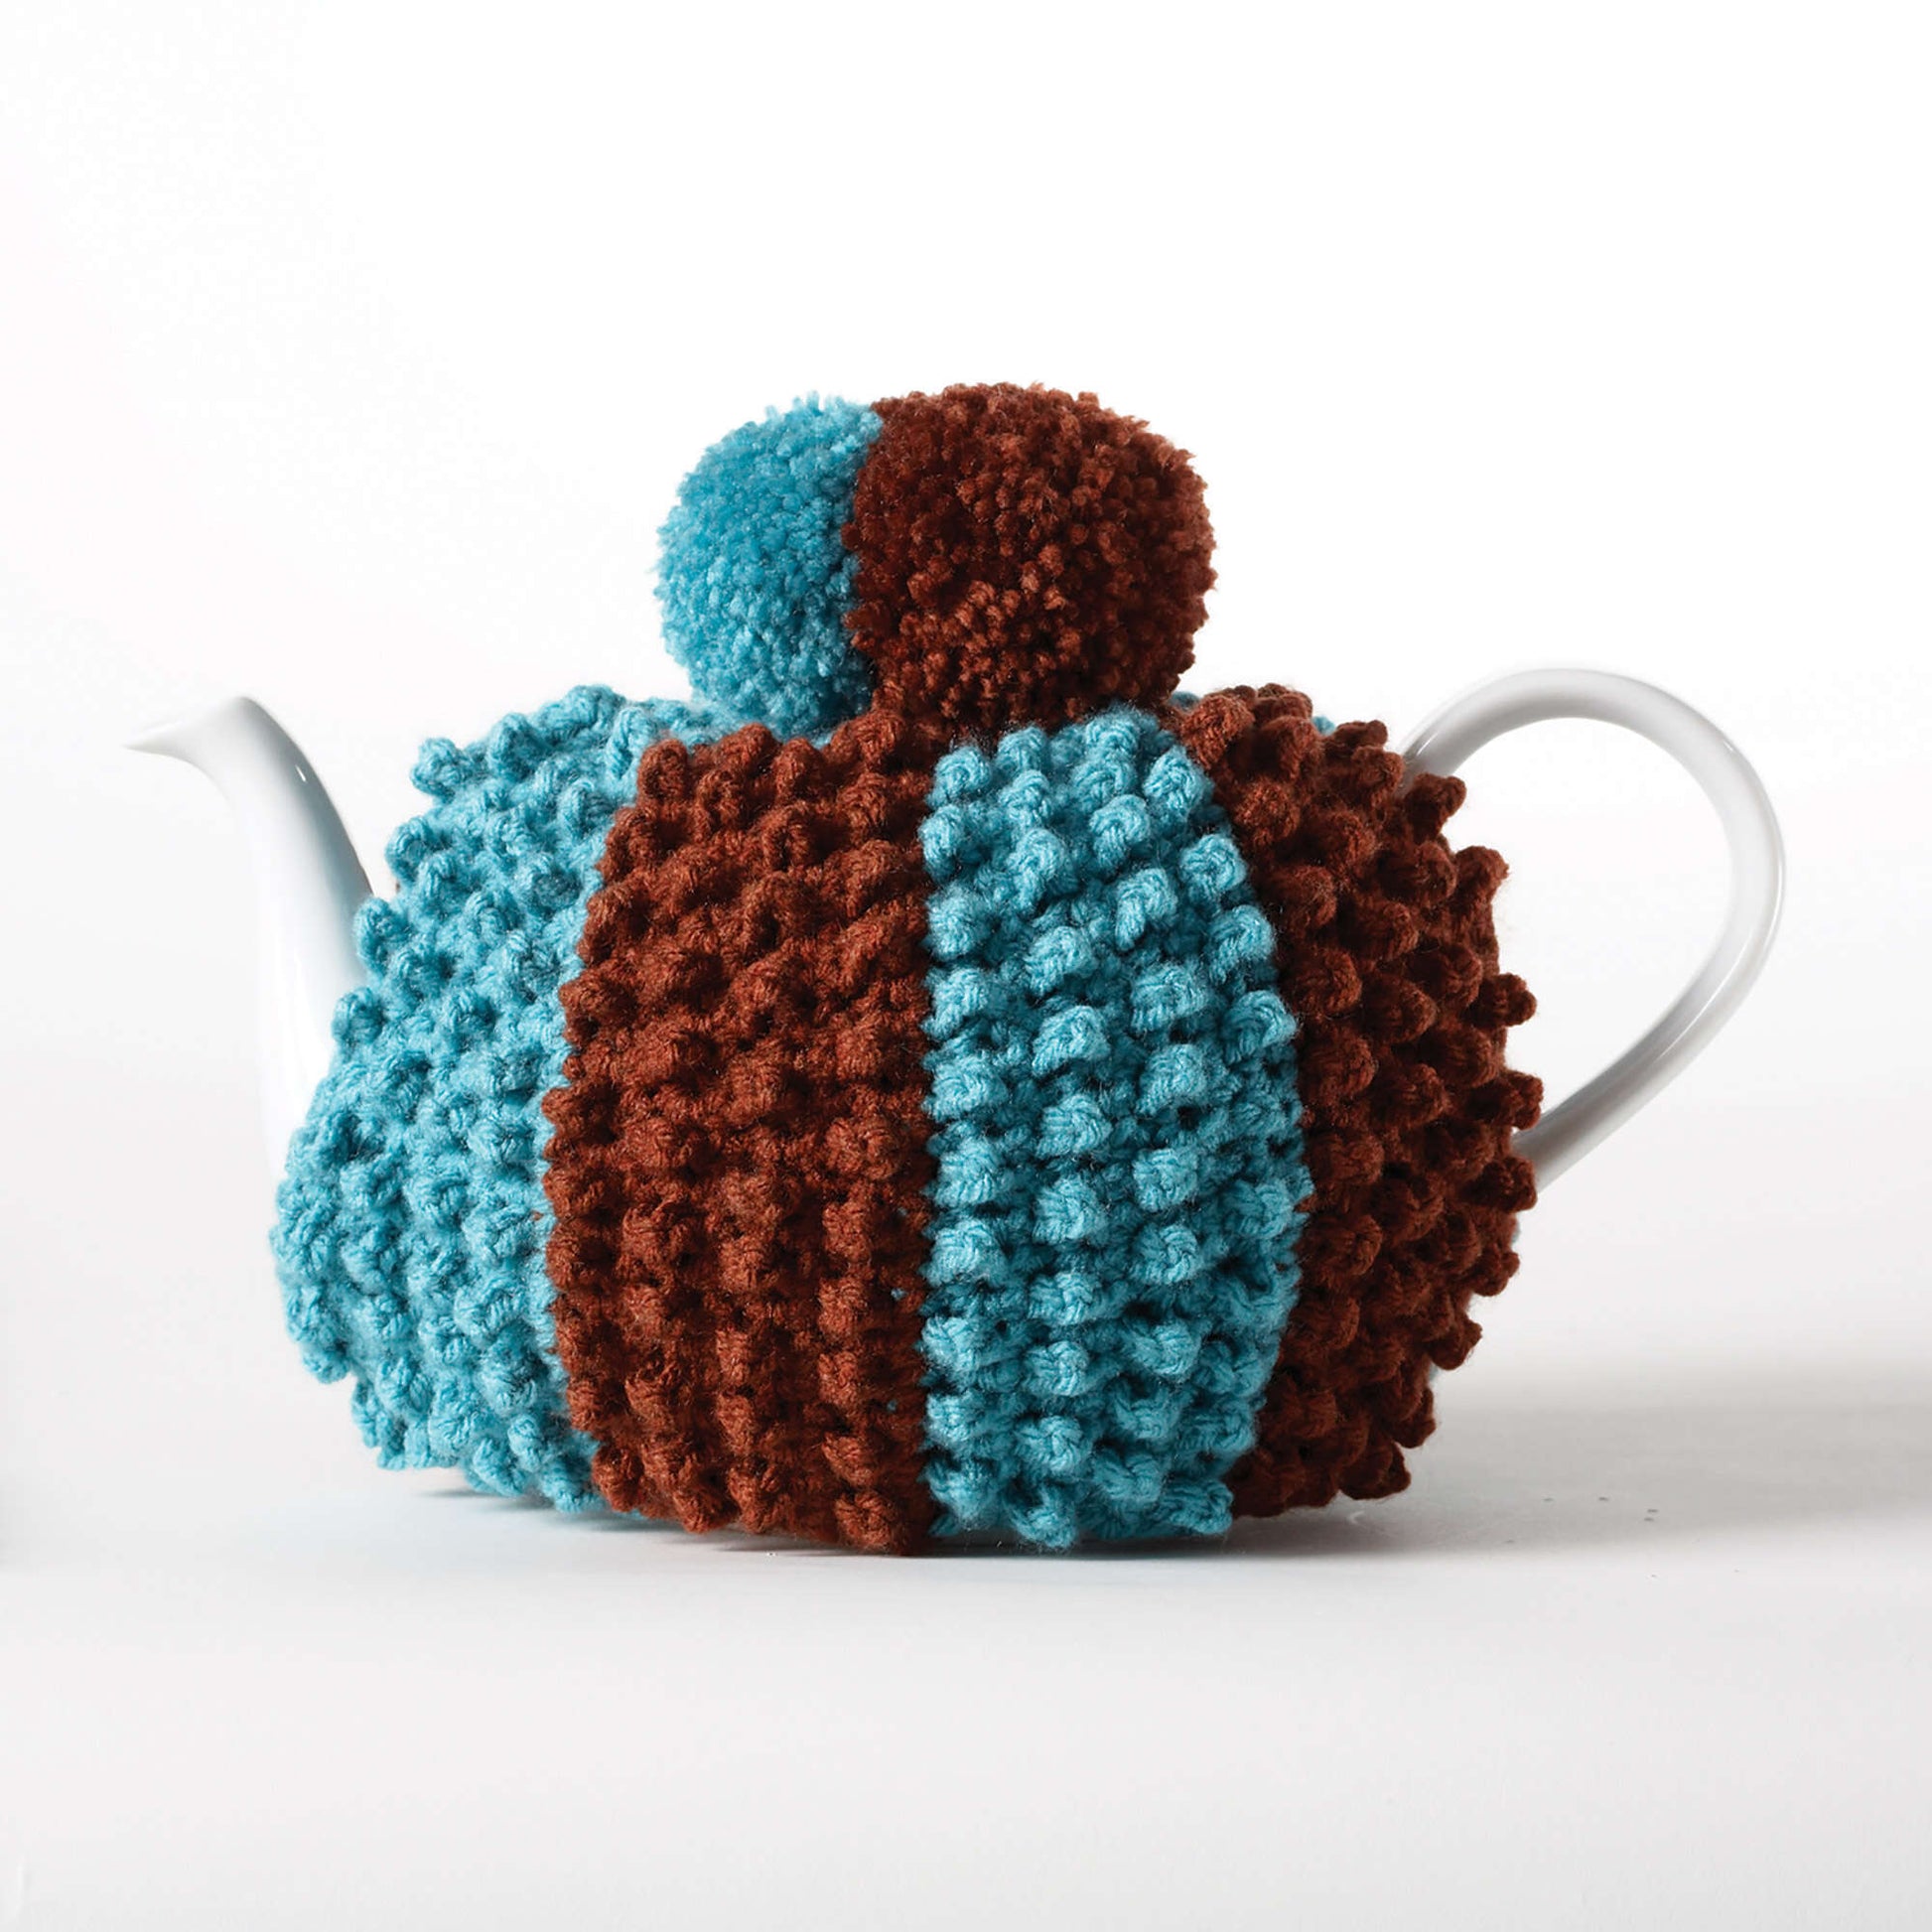 Bernat Crochet Popcorn Tea Cozy Crochet Kitchen Décor made in Bernat Super Value yarn